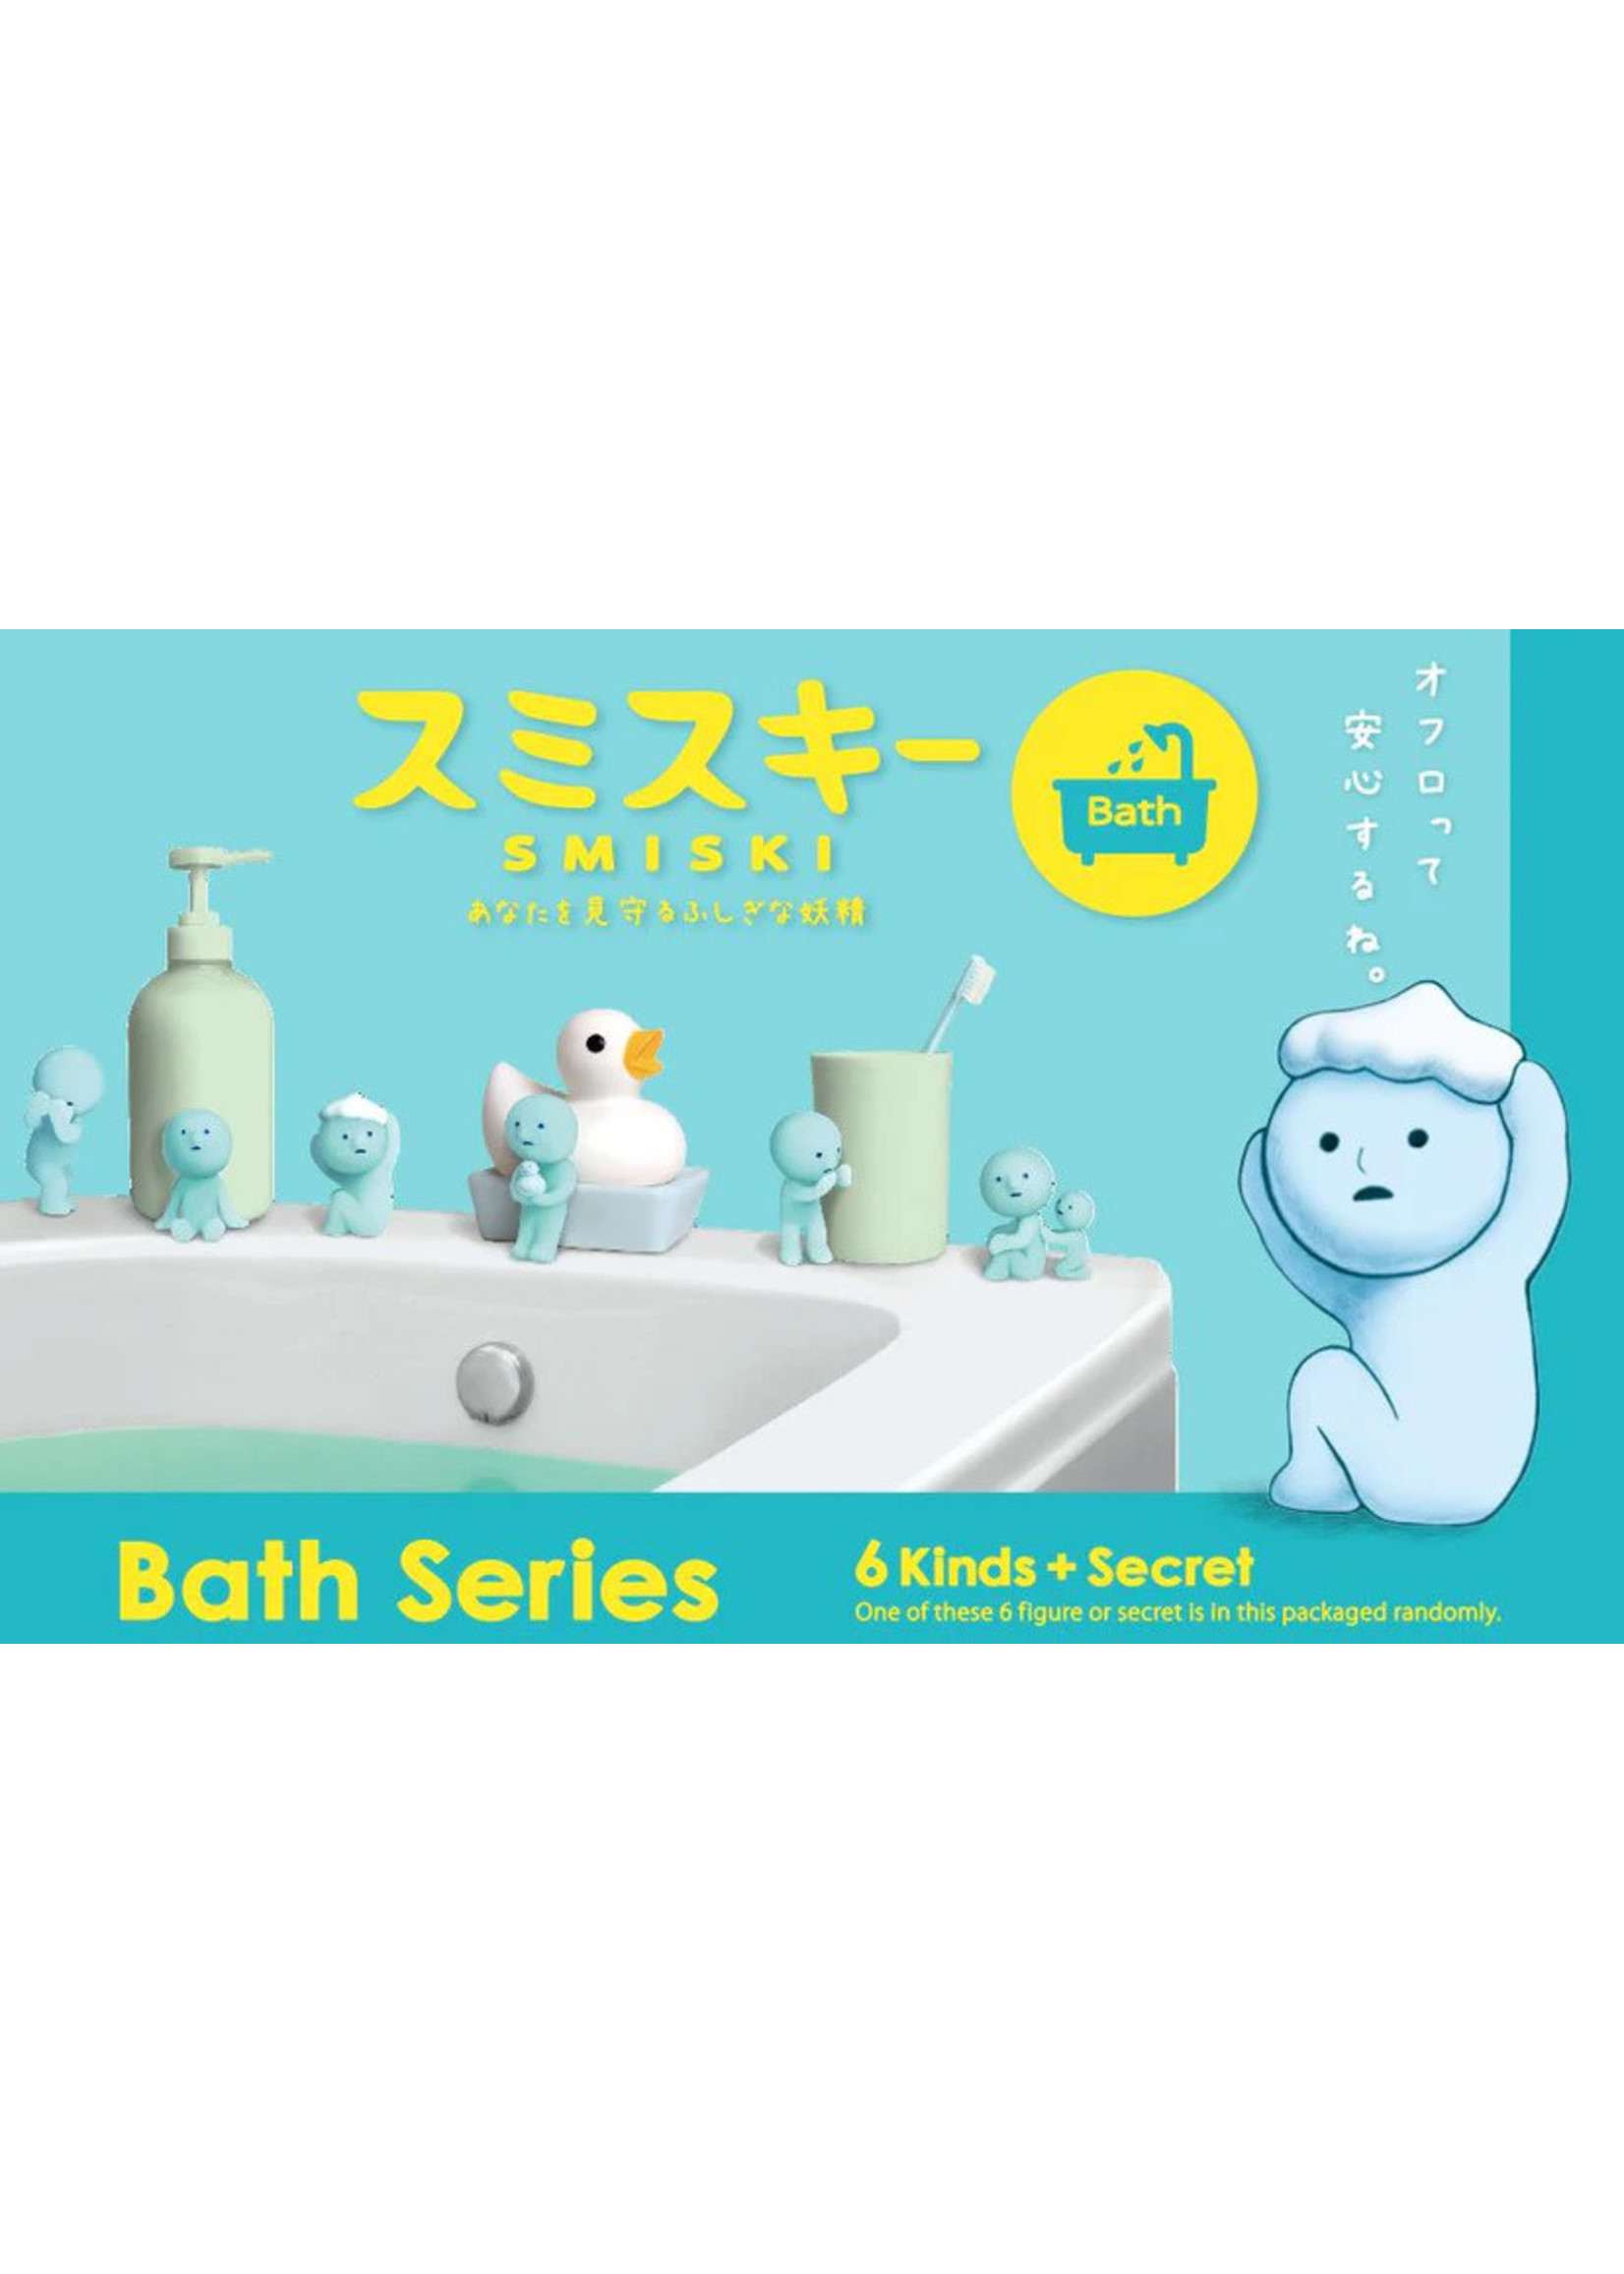 Smiski Smiski Mini Figure Bath Series